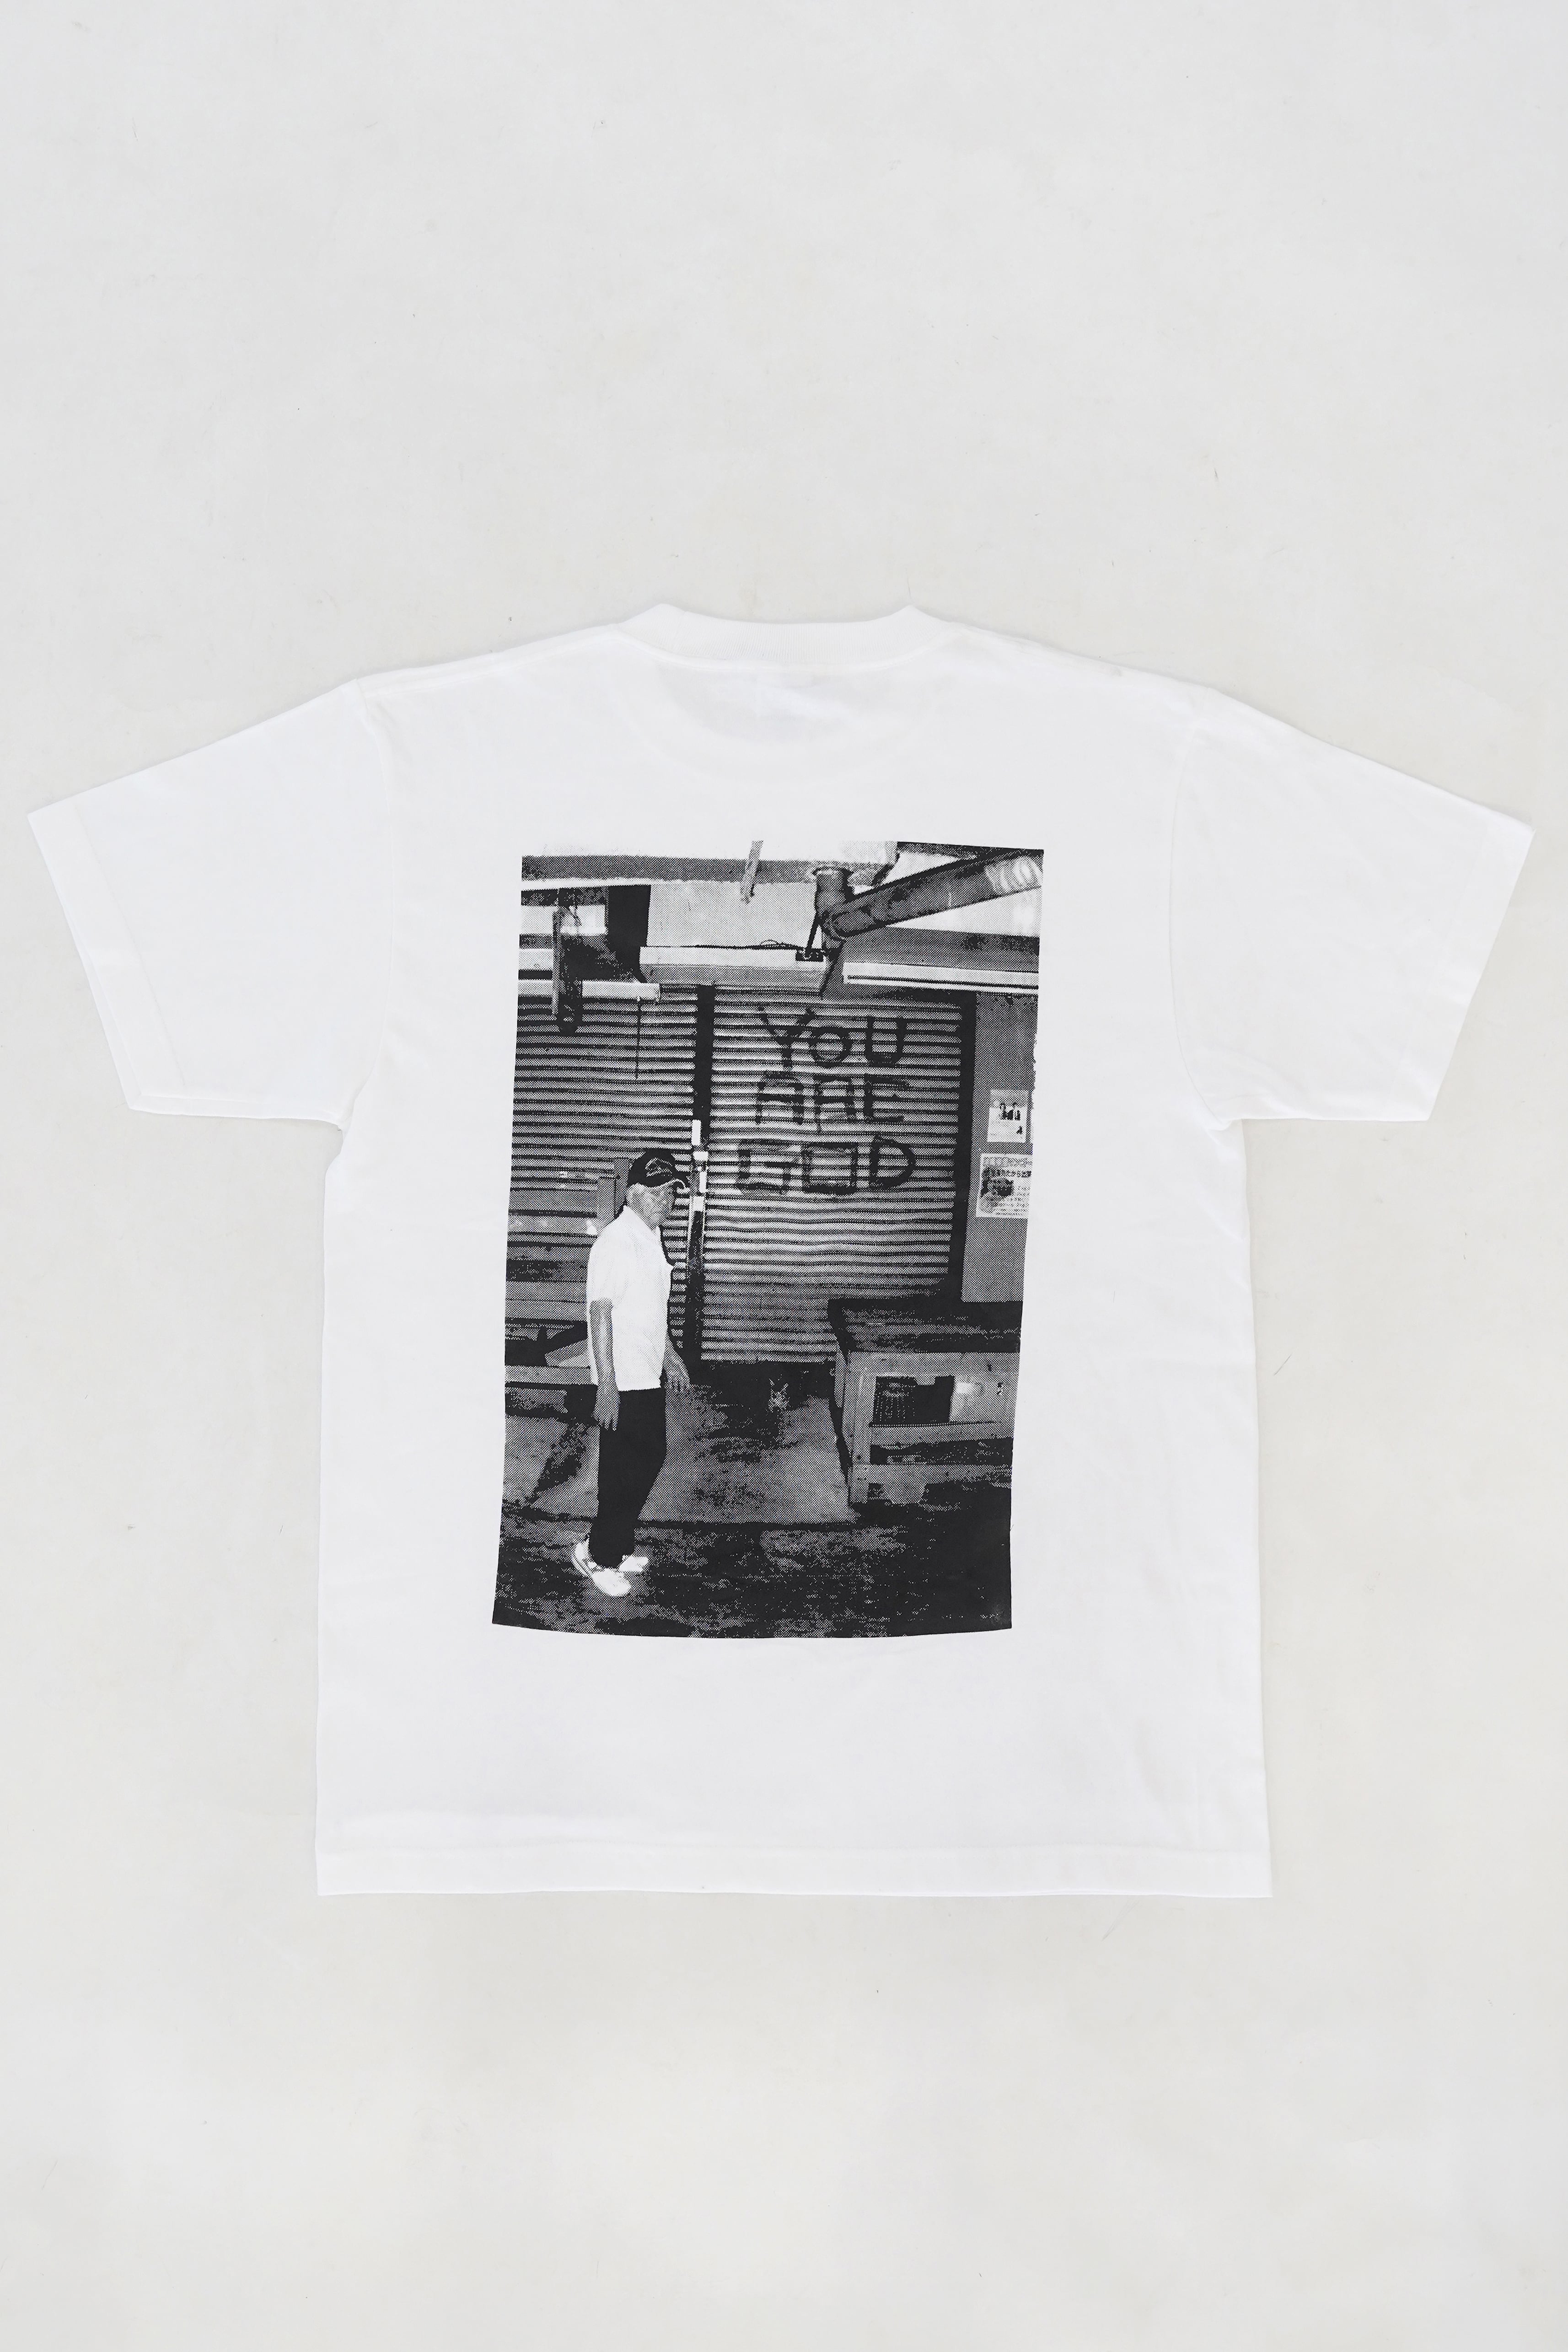 SYUNSUKE SATO [半蔵門アクシデンタリズム] 単色シルクスクリーンTシャツ "GOD"